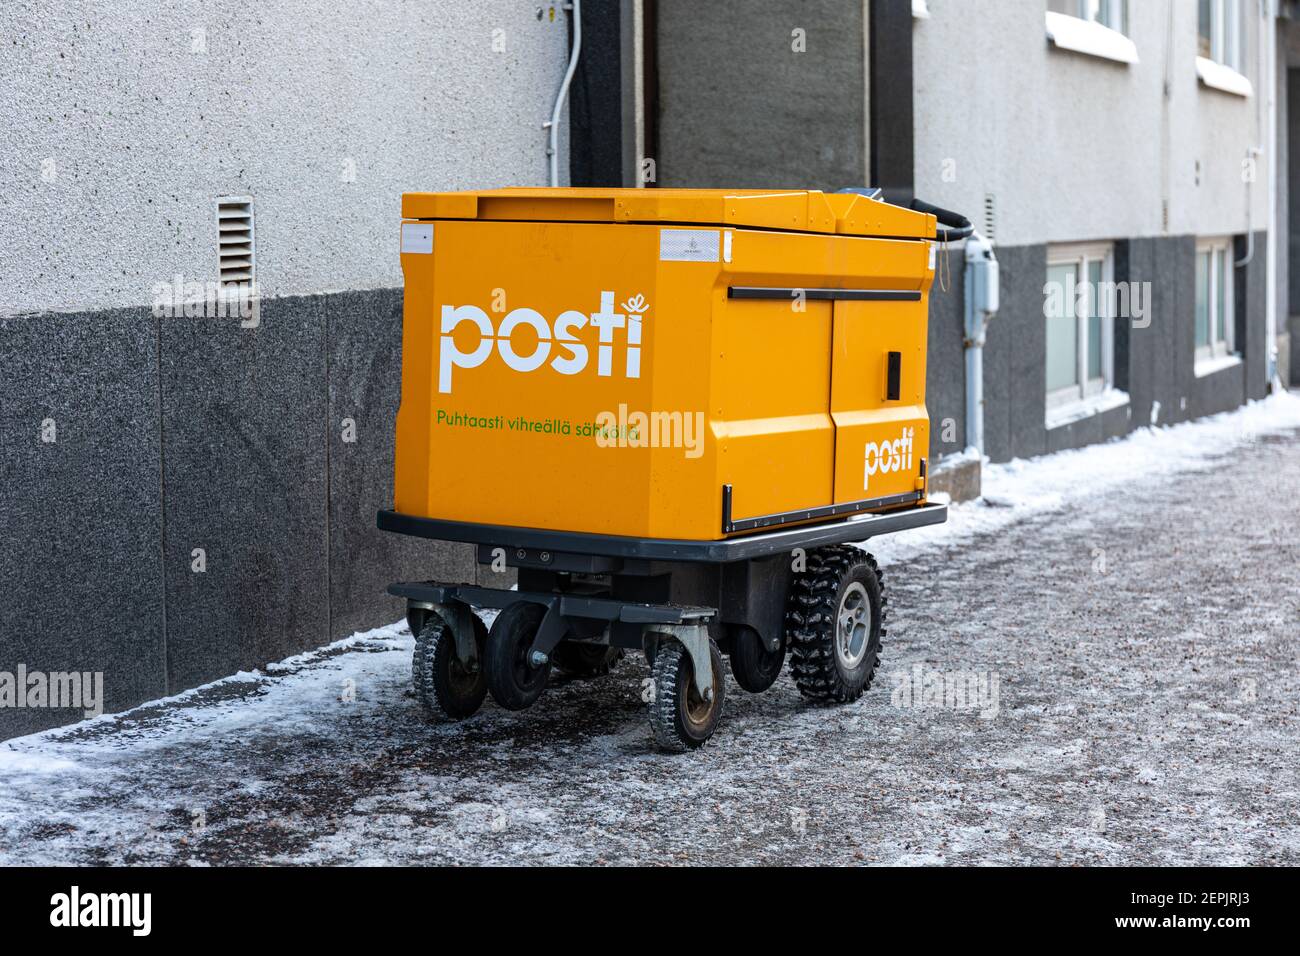 Moderne elektrische Postwagen oder Postwagen der Posti Group Ltd im Winter  in Helsinki, Finnland Stockfotografie - Alamy